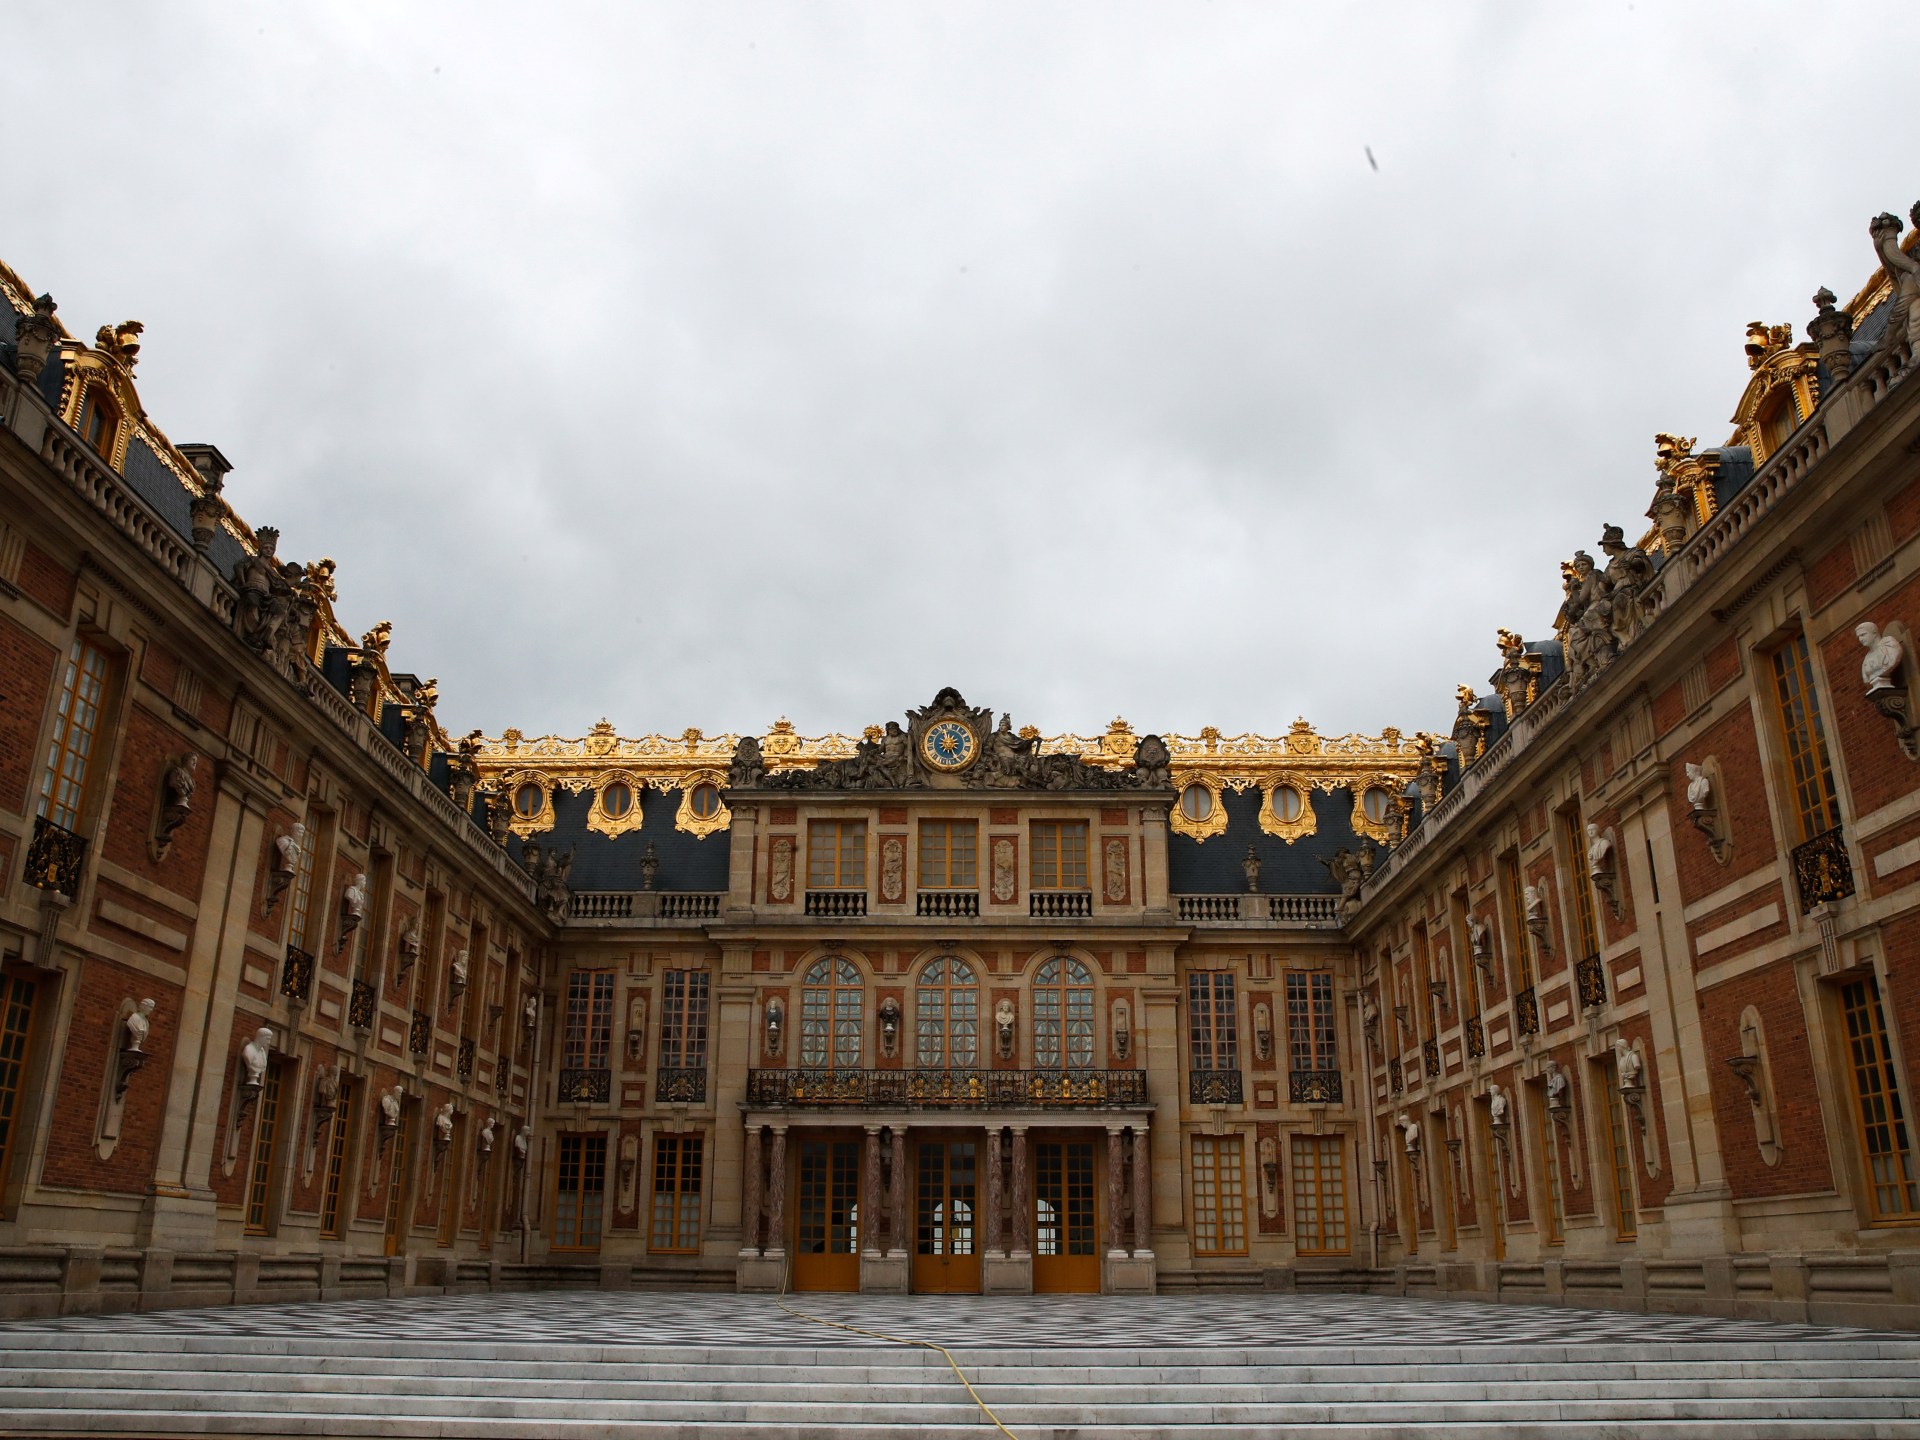 إخلاء قصر فرساي بعد إنذار آخر بوجود قنبلة | أخبار – البوكس نيوز